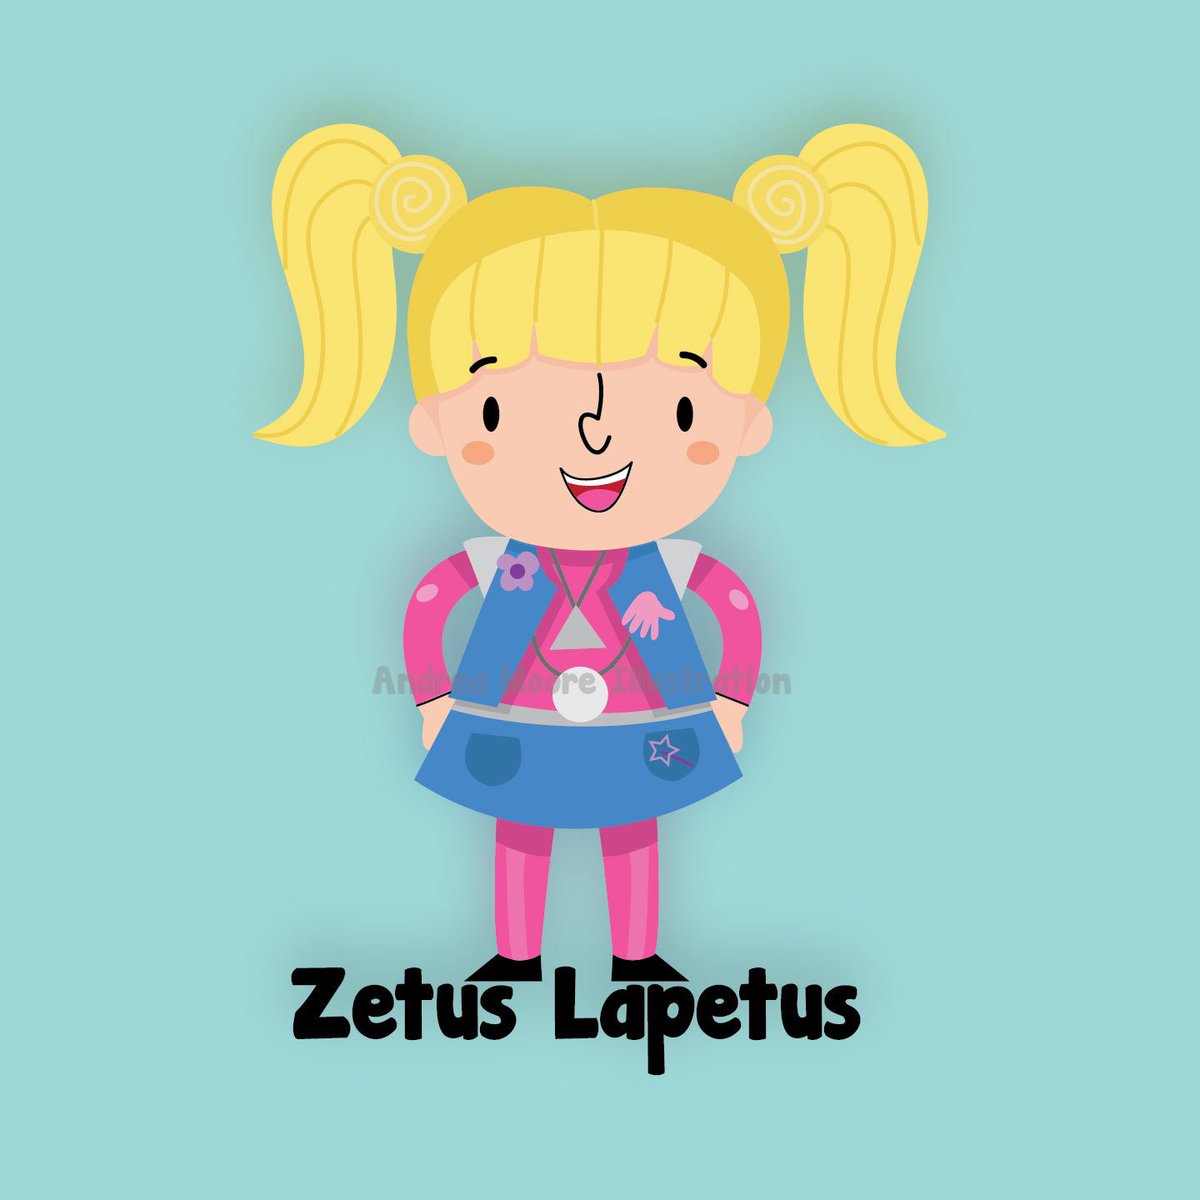 #ZetusLapetus it's #ZenonGirlofthe21rstCentury ( #zenon #90sDisney #vectorart #vector #illustration #Disney #ZenonCarr #Cartoon #Art )